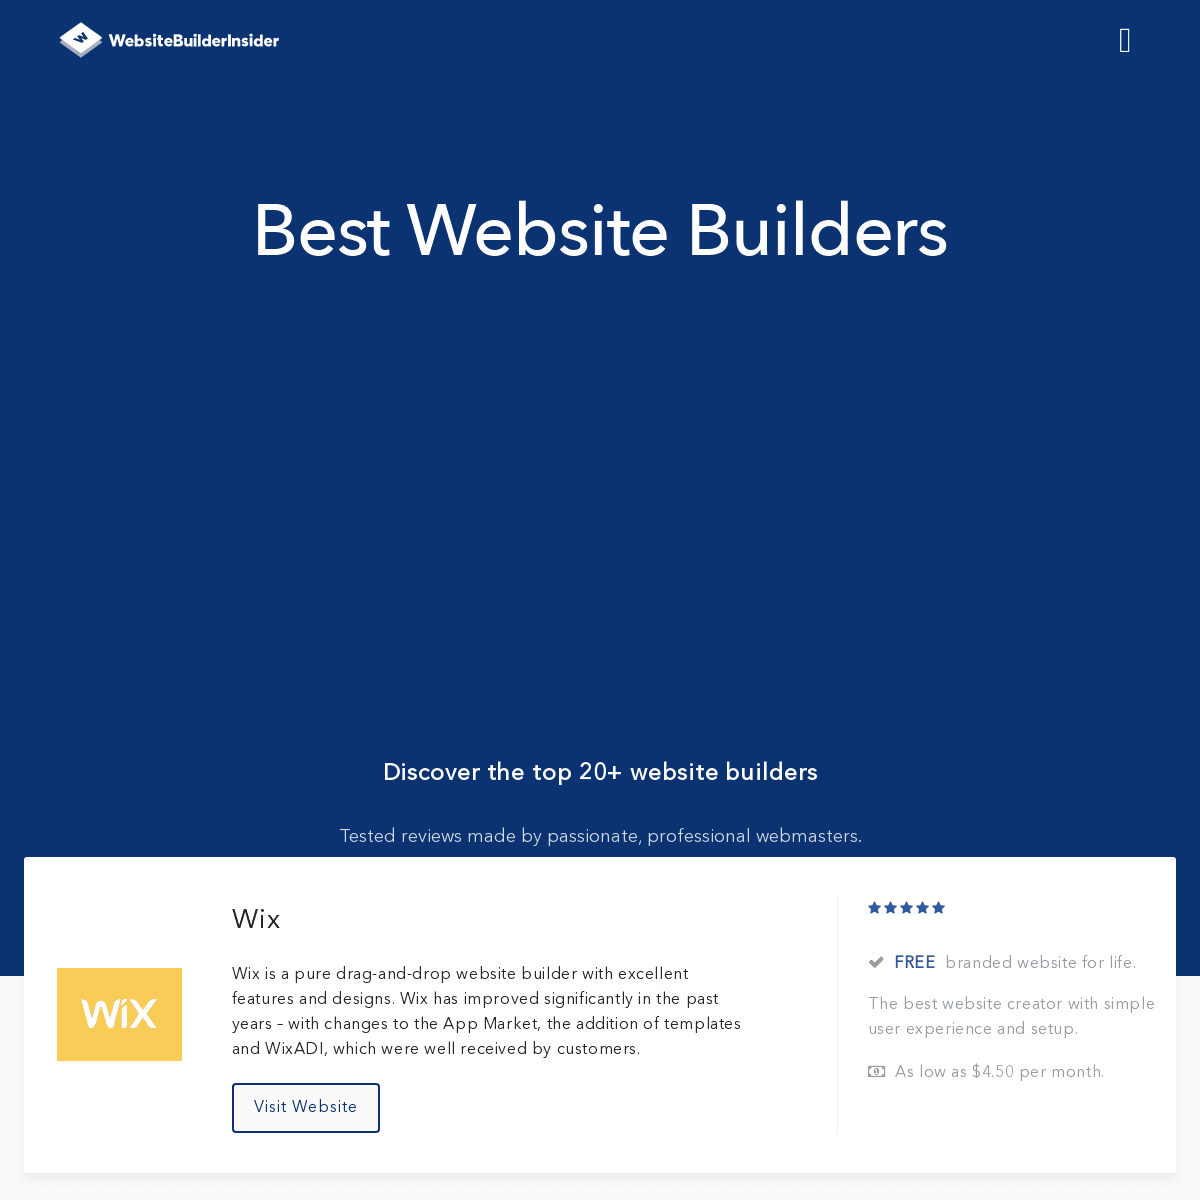 A complete backup of websitebuilderinsider.com